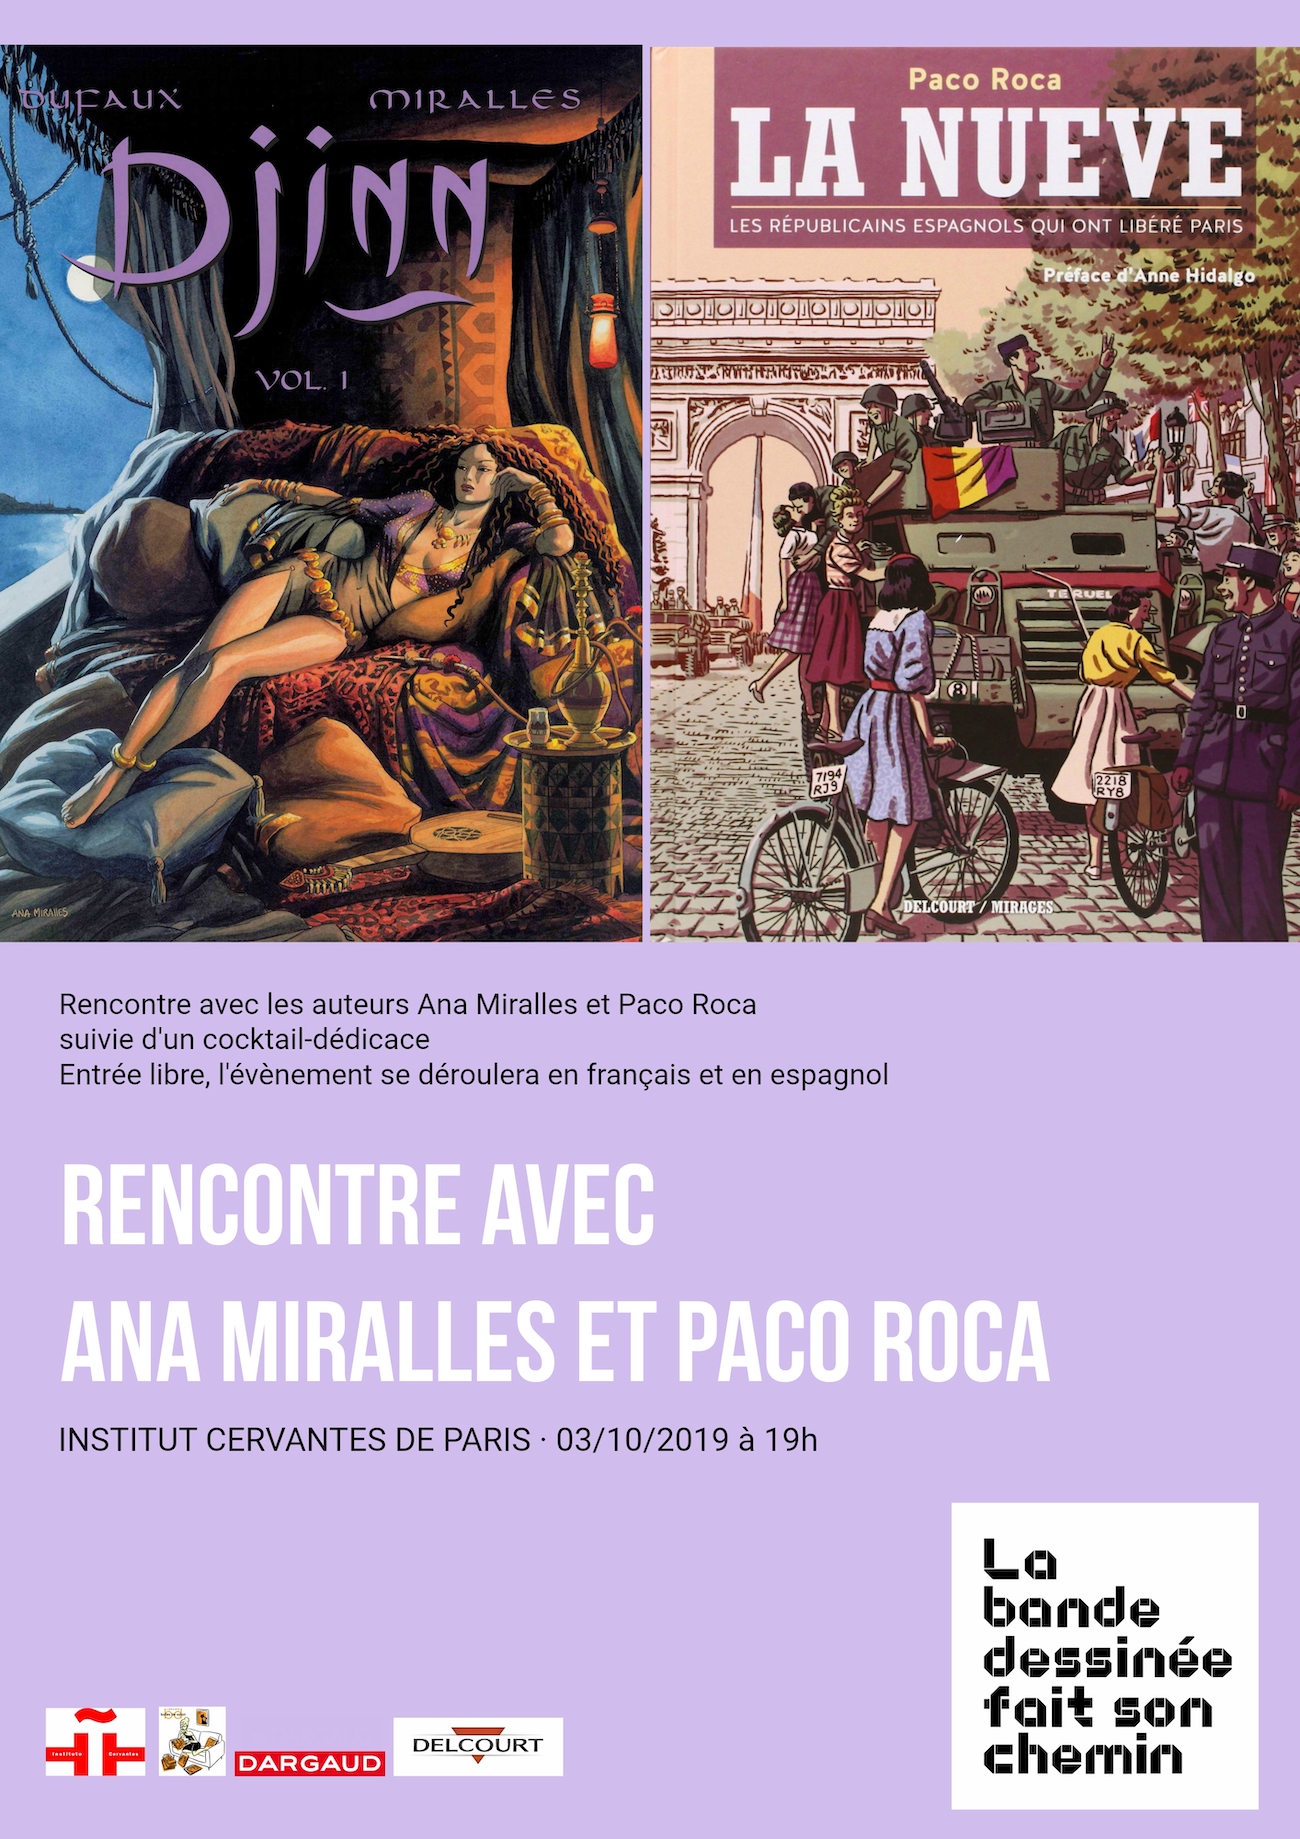 Rencontre et dédicace avec Ana Miralles et Paco Roca à l'Institut Cervantes de Paris ! 